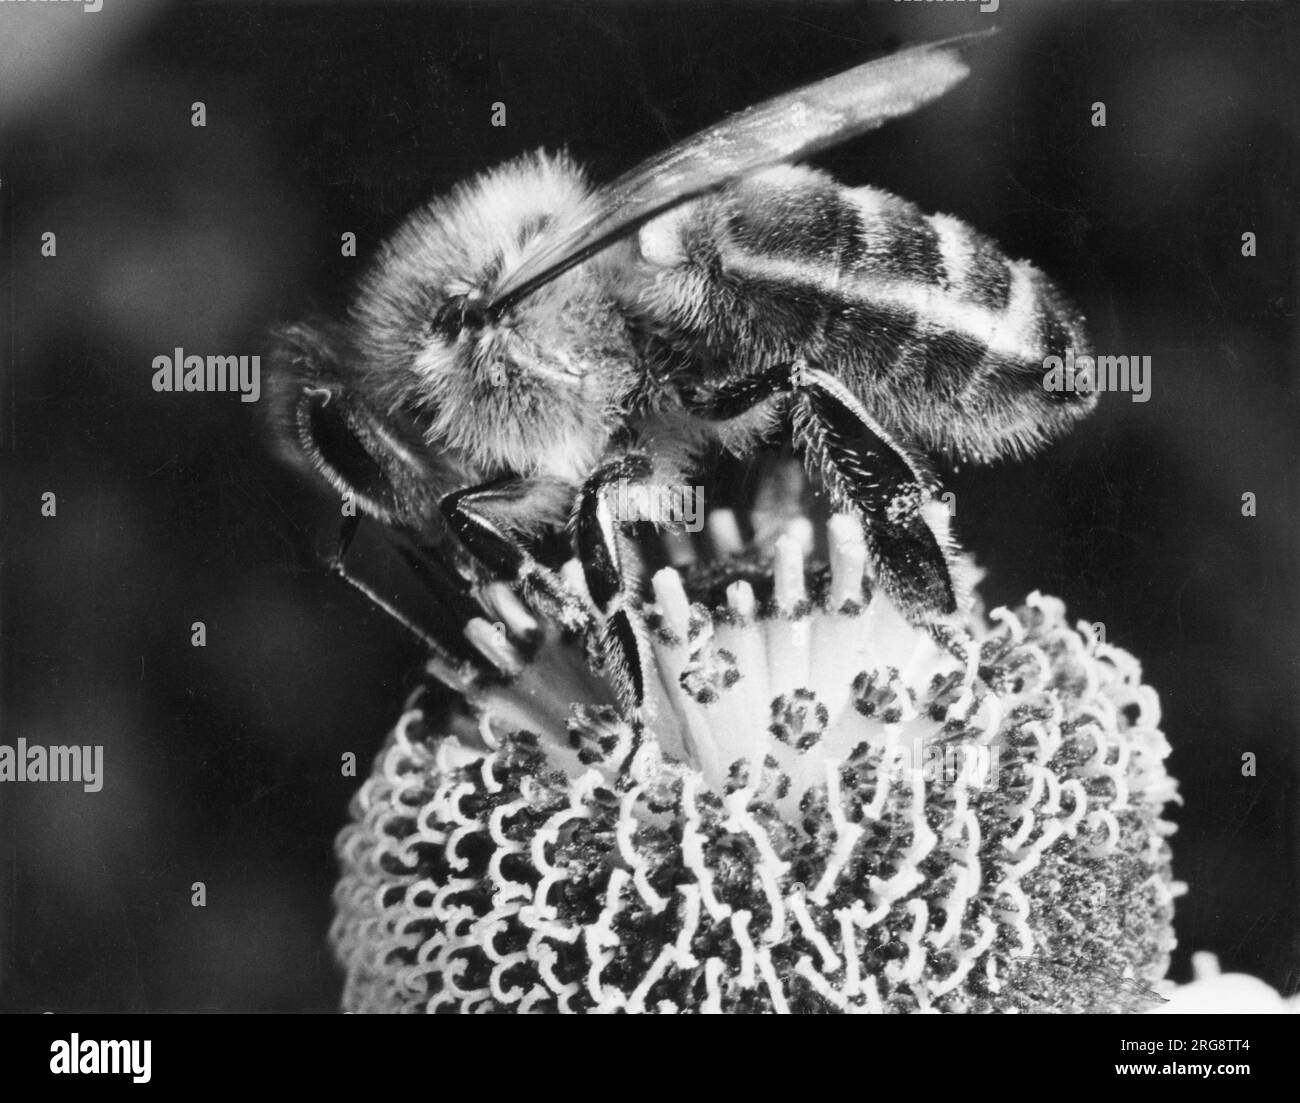 Eine Biene auf einer helenium-Blume „Sneezeweed“, die mit blühenden Blüten versehen ist, die eine unschätzbare Quelle für Nektar darstellen. Stockfoto